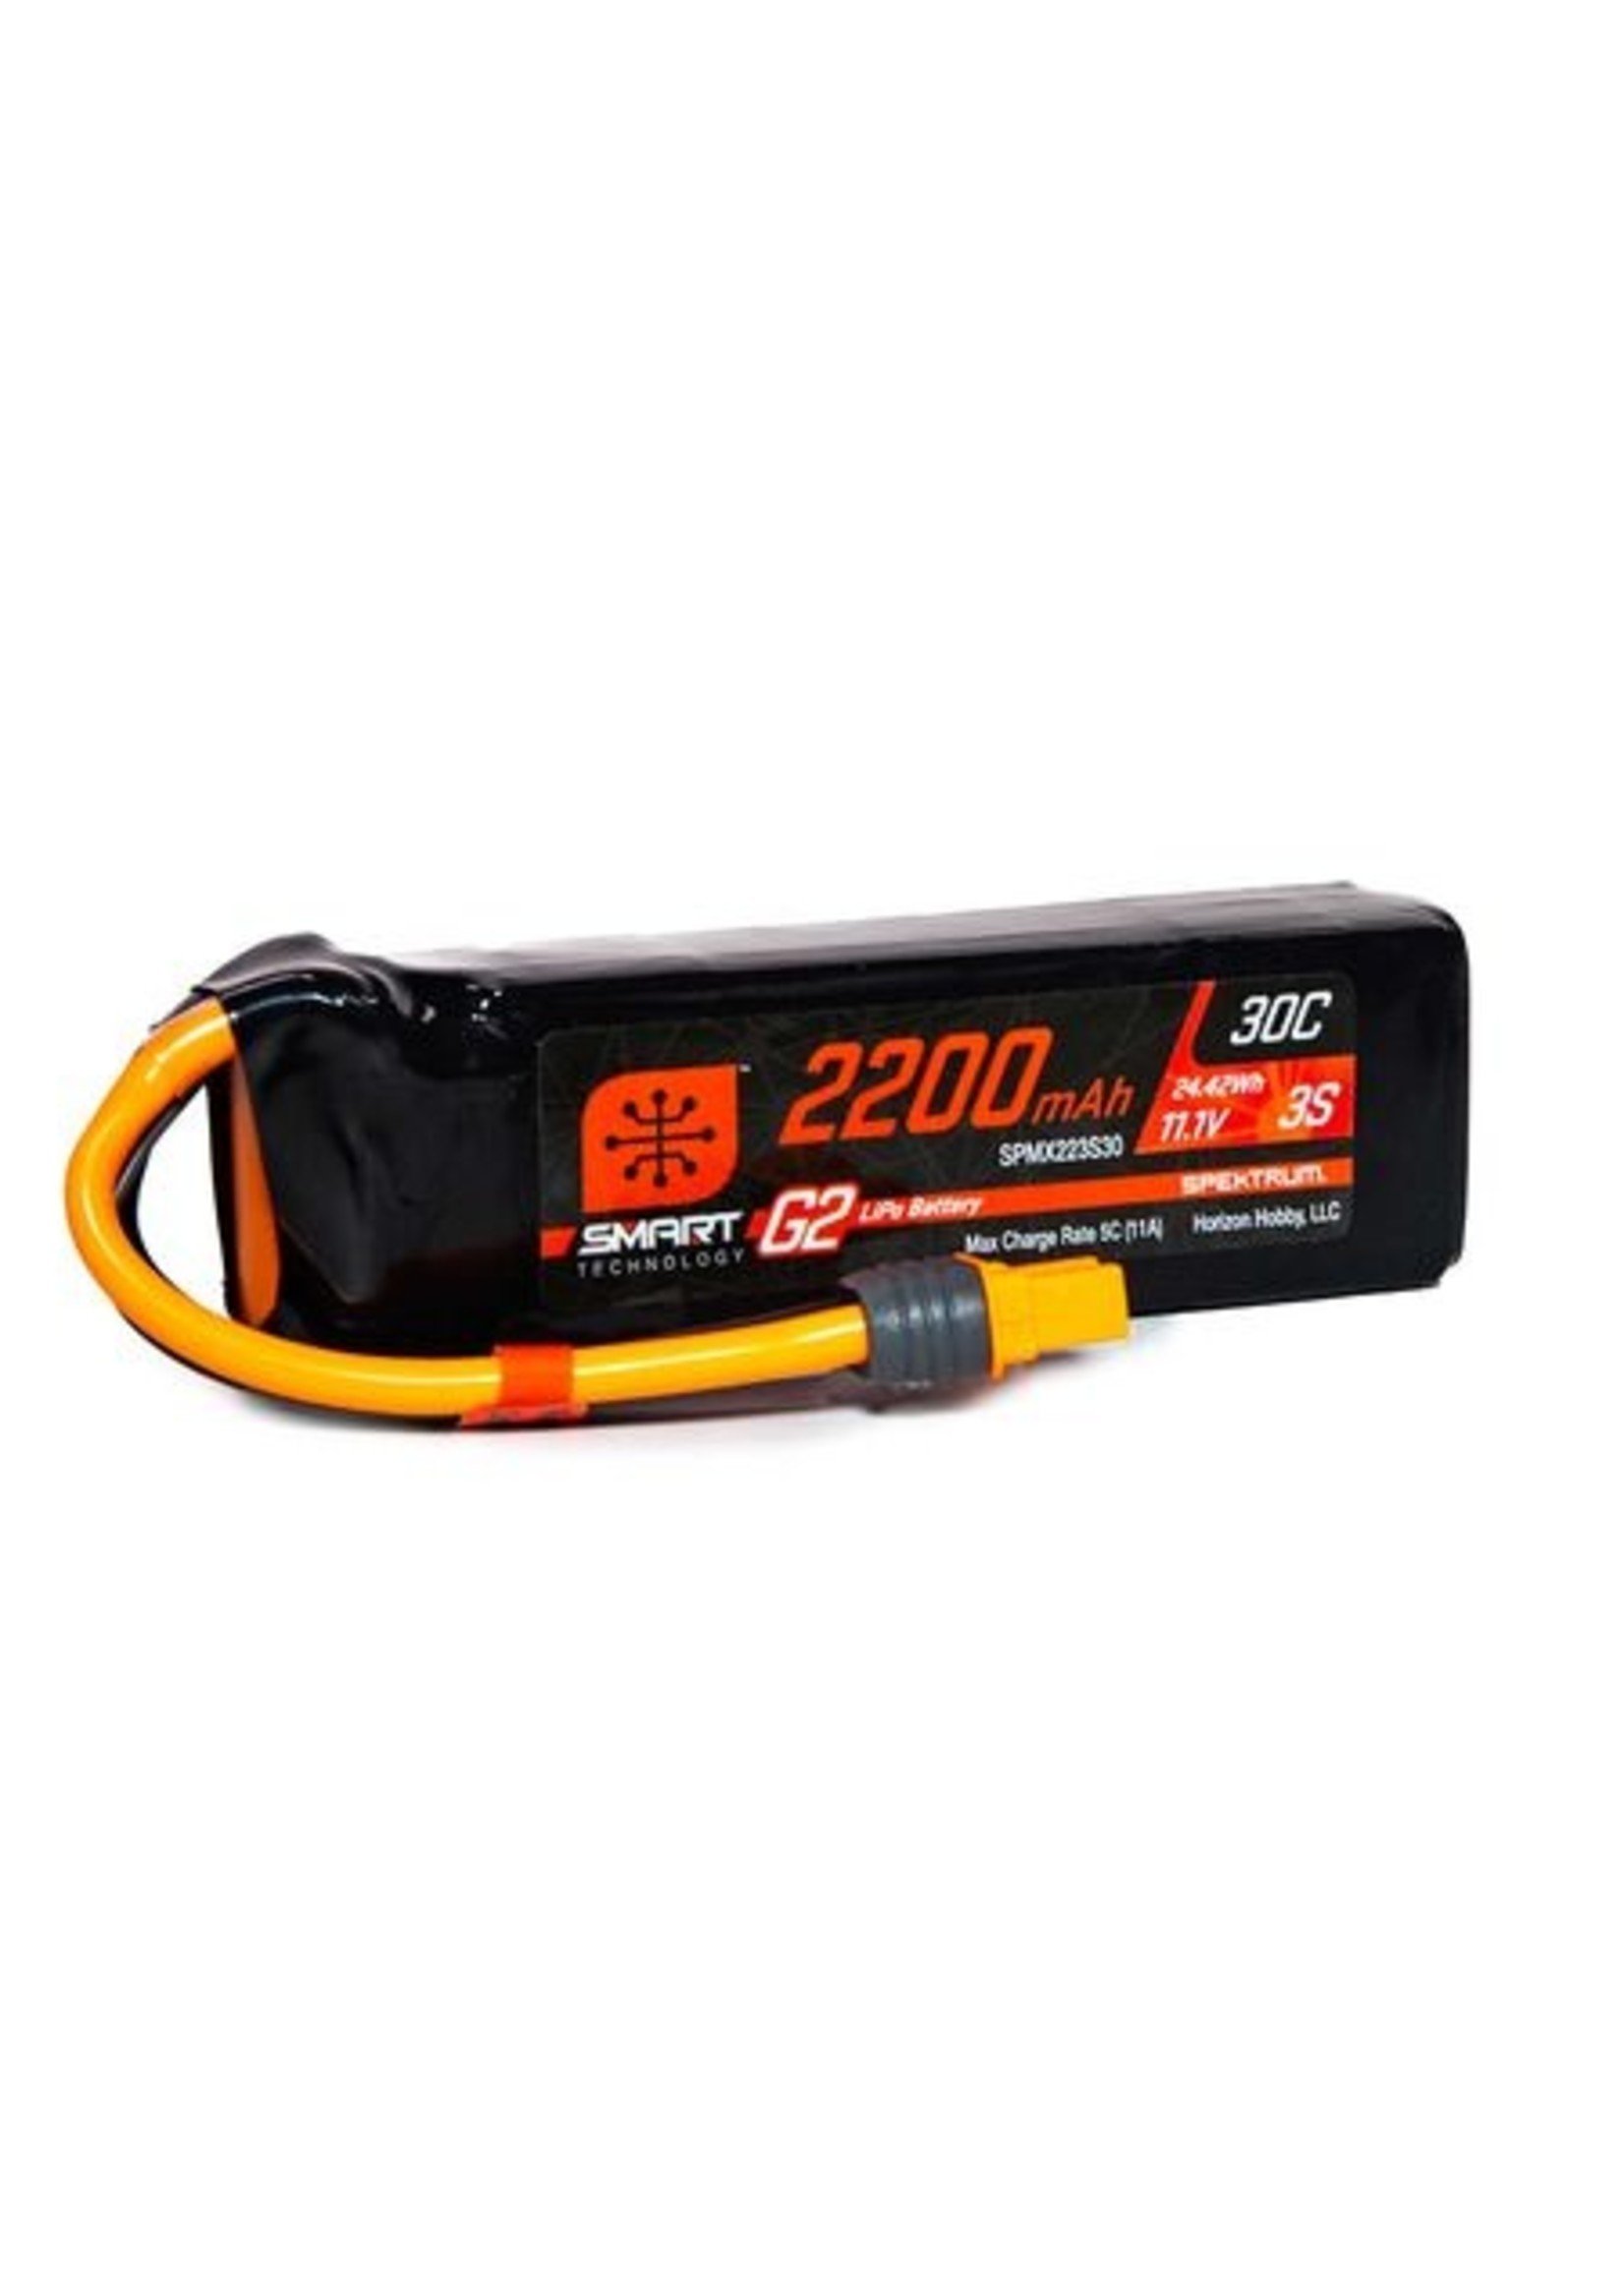 Spektrum SPMX223S30 - 11.1V 2200mAh 3S 30C Smart G2 LiPo Battery: IC3